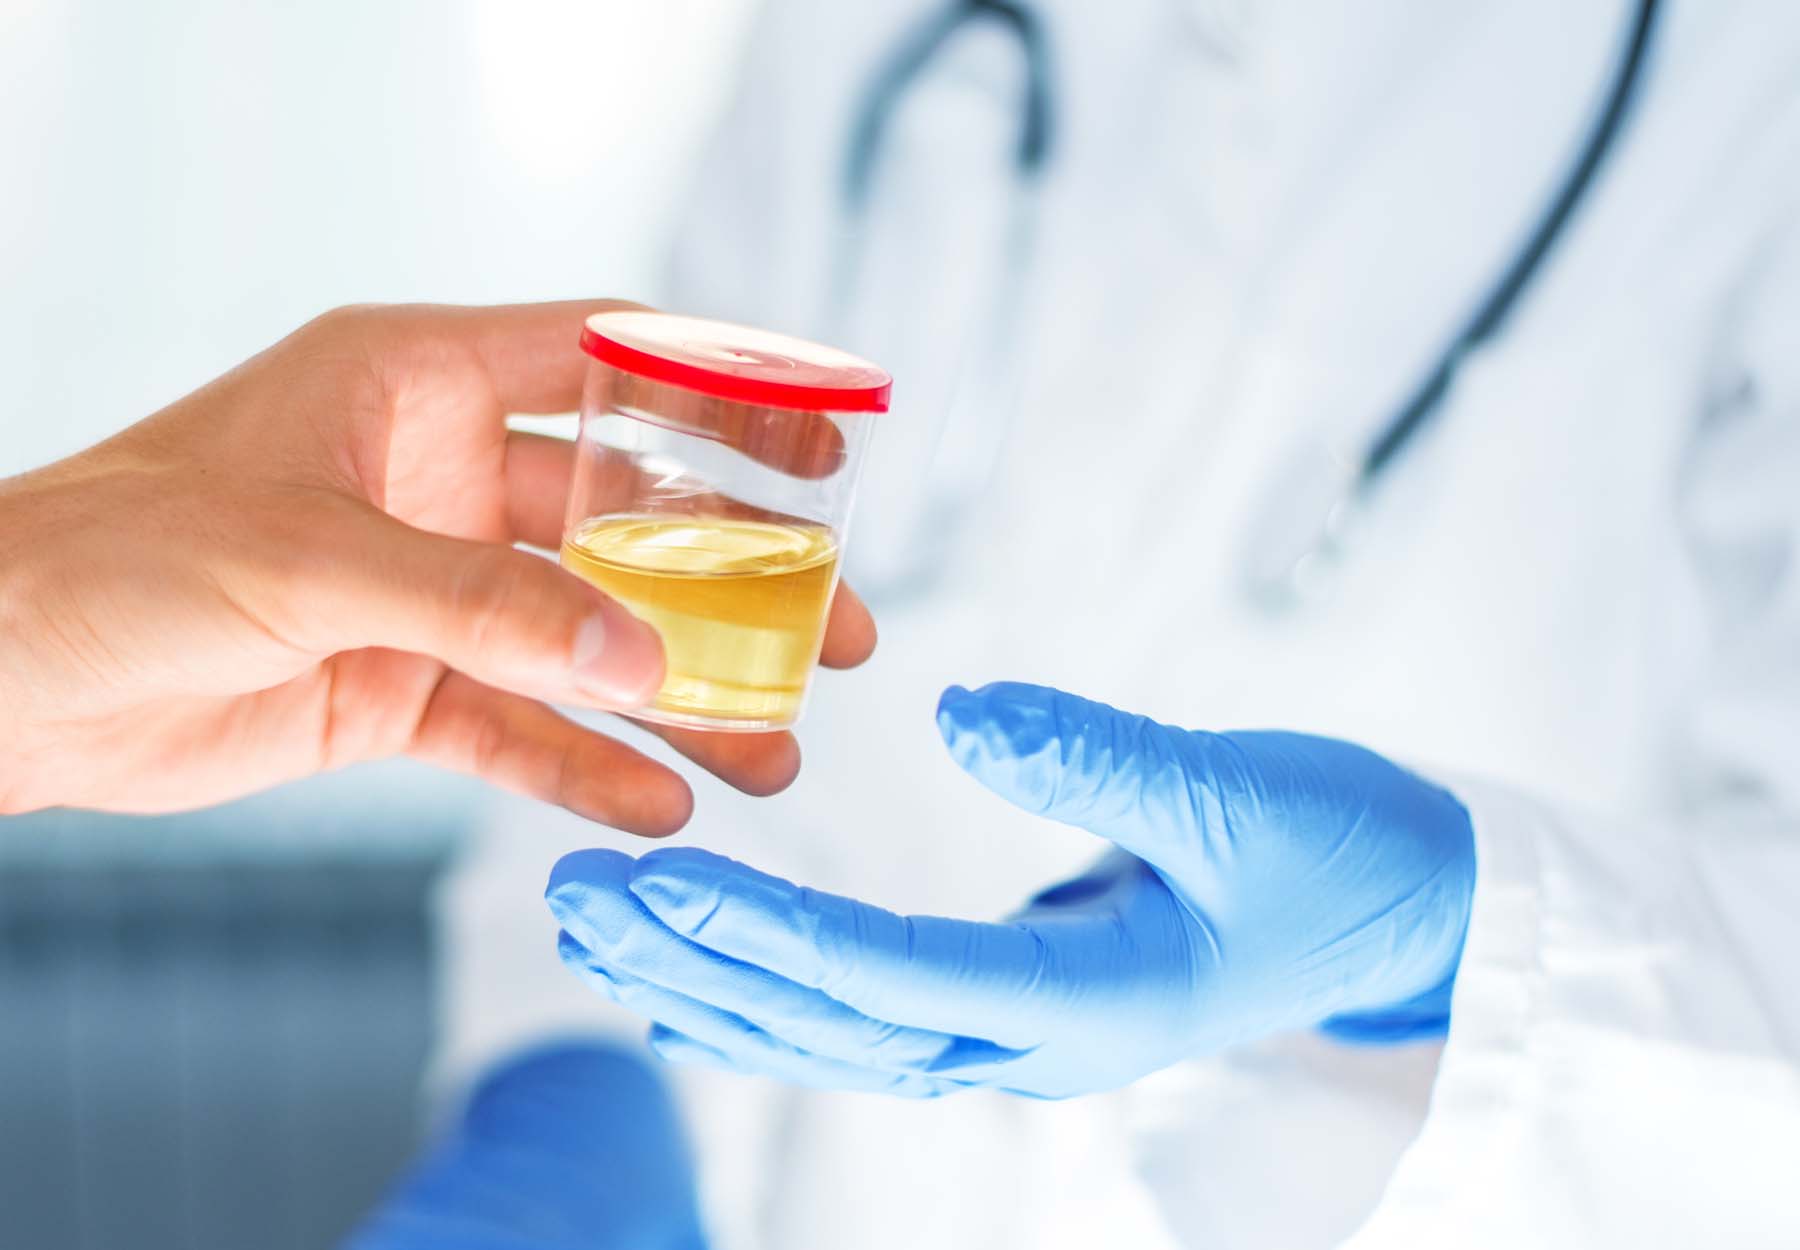 Doctor Pays $228,000 to Settle Urine Drug Test False Billing Charges